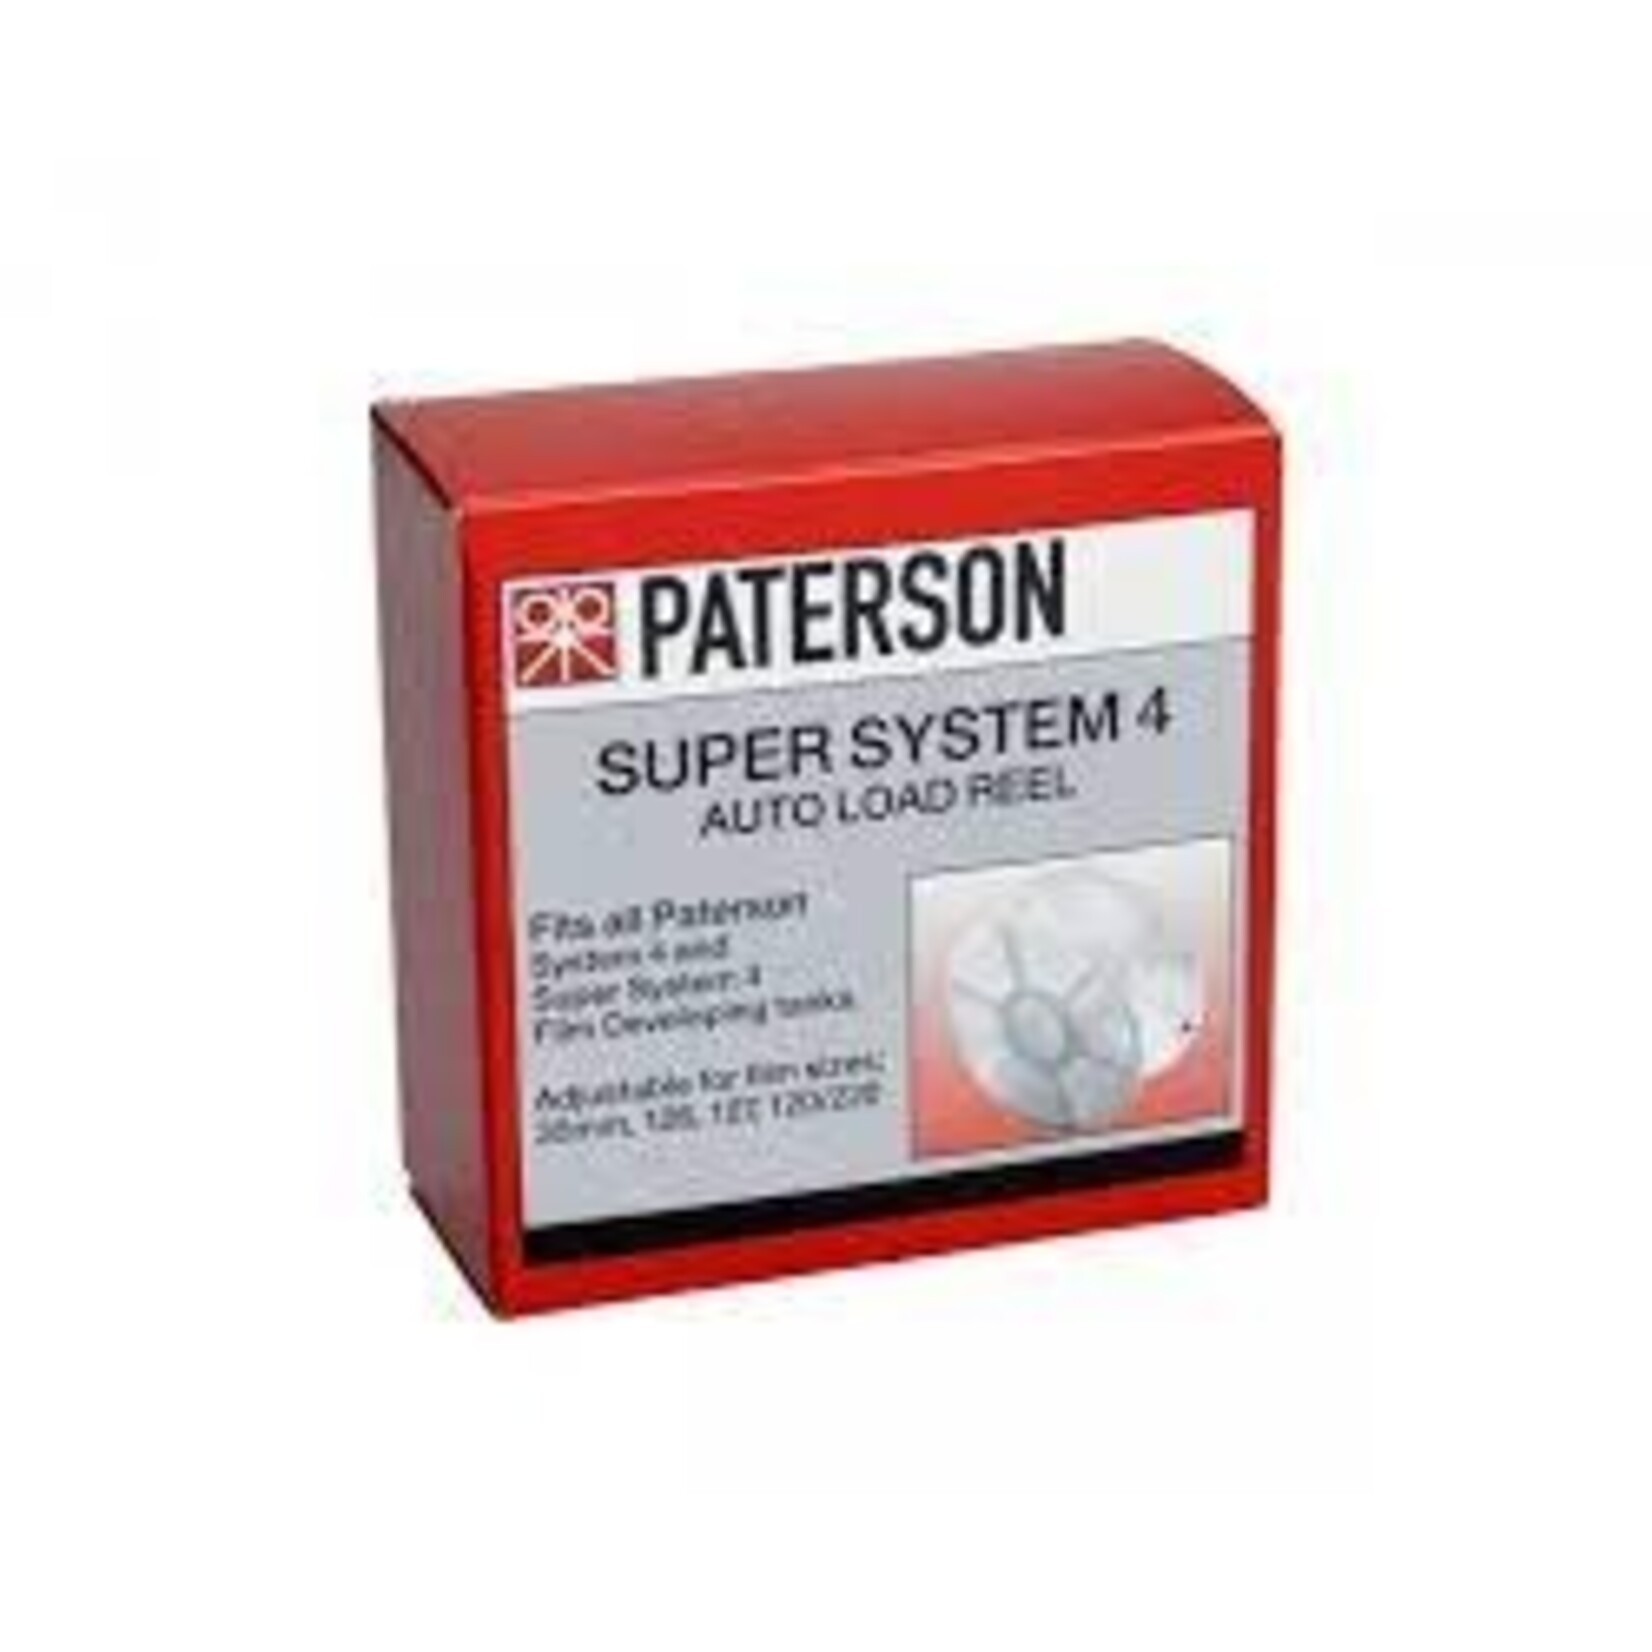 Paterson Paterson Auto Load Reel - Single